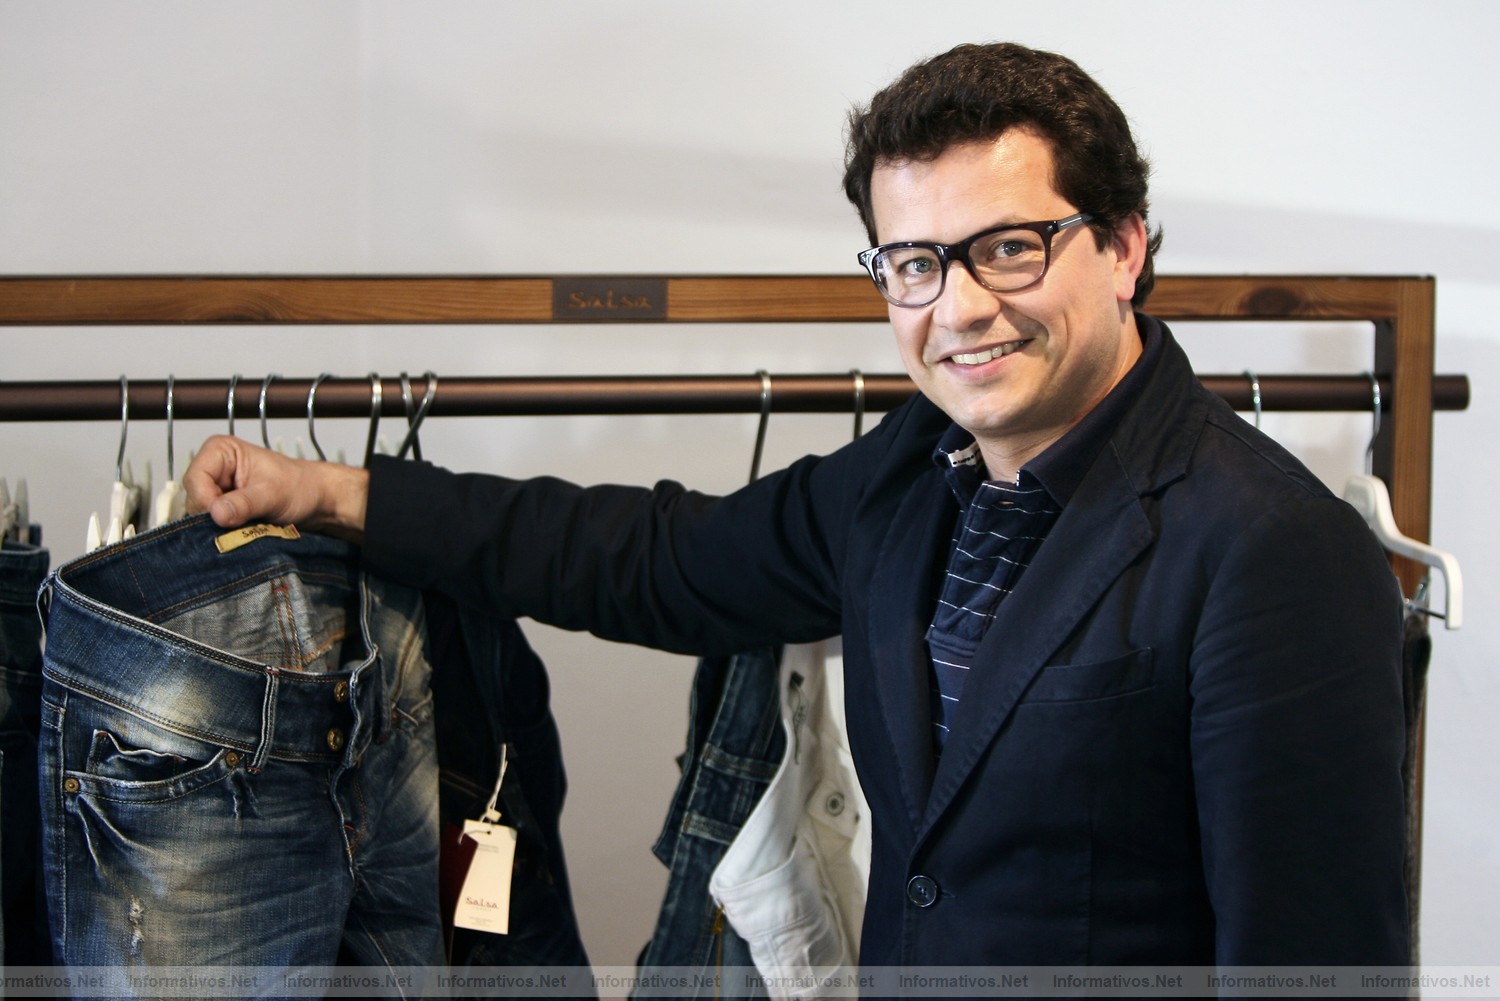 BCN1ABR011.- João Pedro Fernandes Da Costa Braga - Director de Marketing de Salsa Jeans